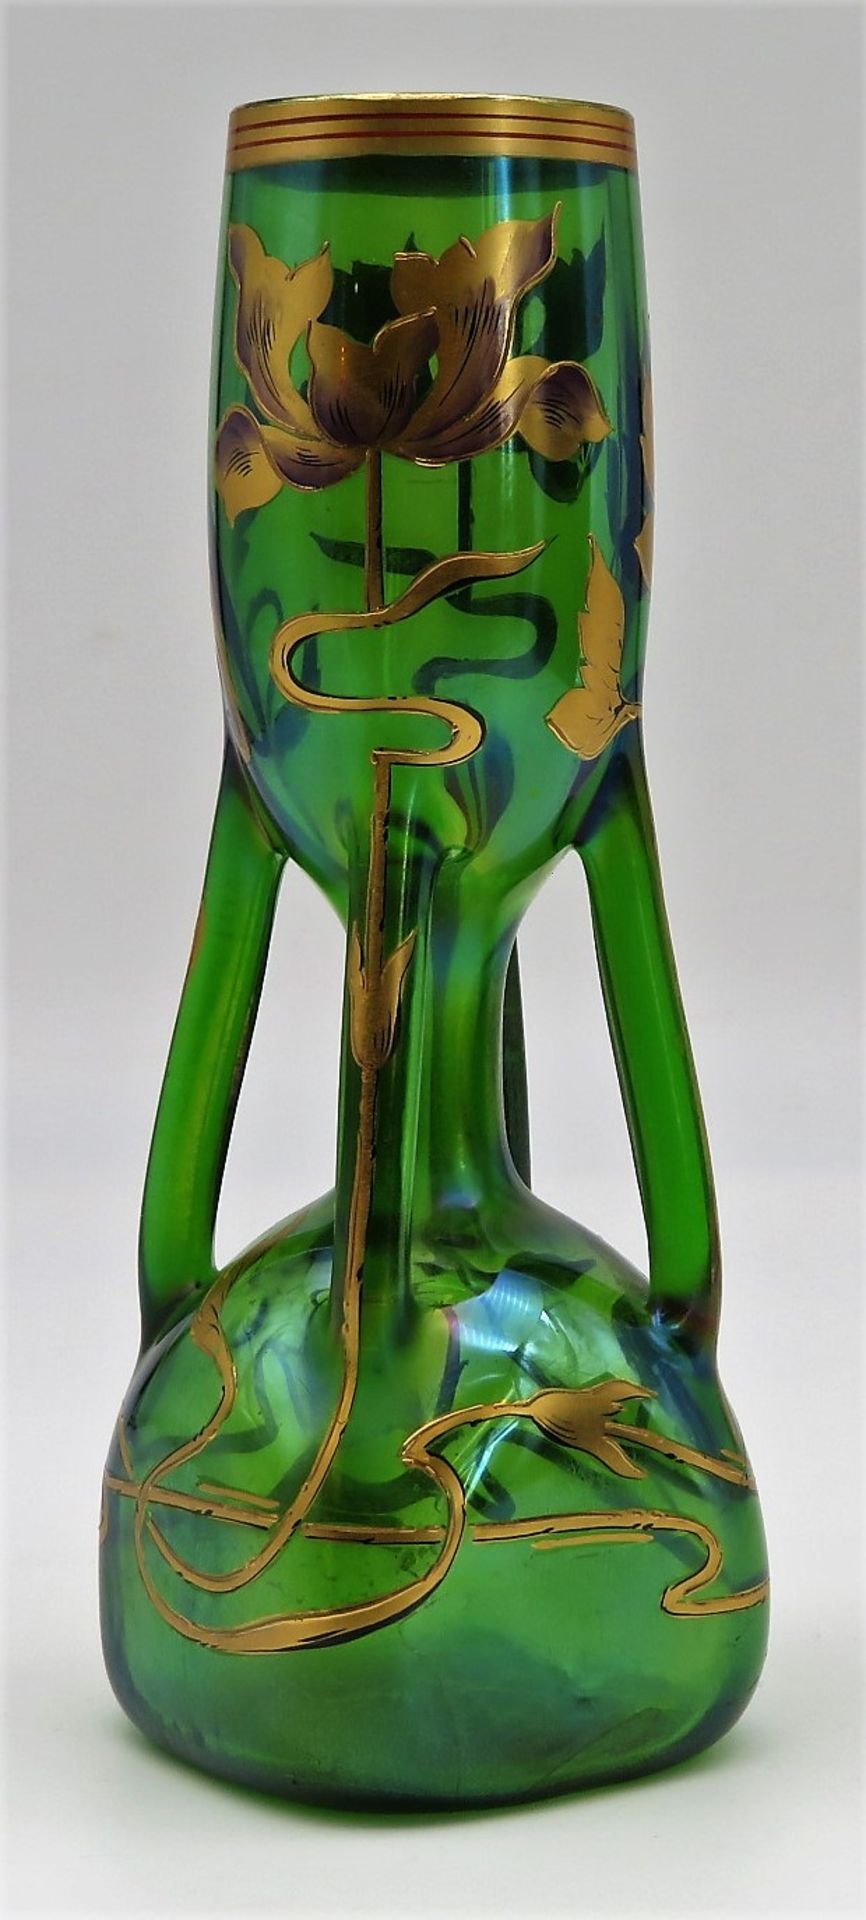 Vase, Jugendstil, um 1900, Grün eingefärbtes Glas, stark irisierend, feine, umlaufende Goldblütenbe - Bild 2 aus 2